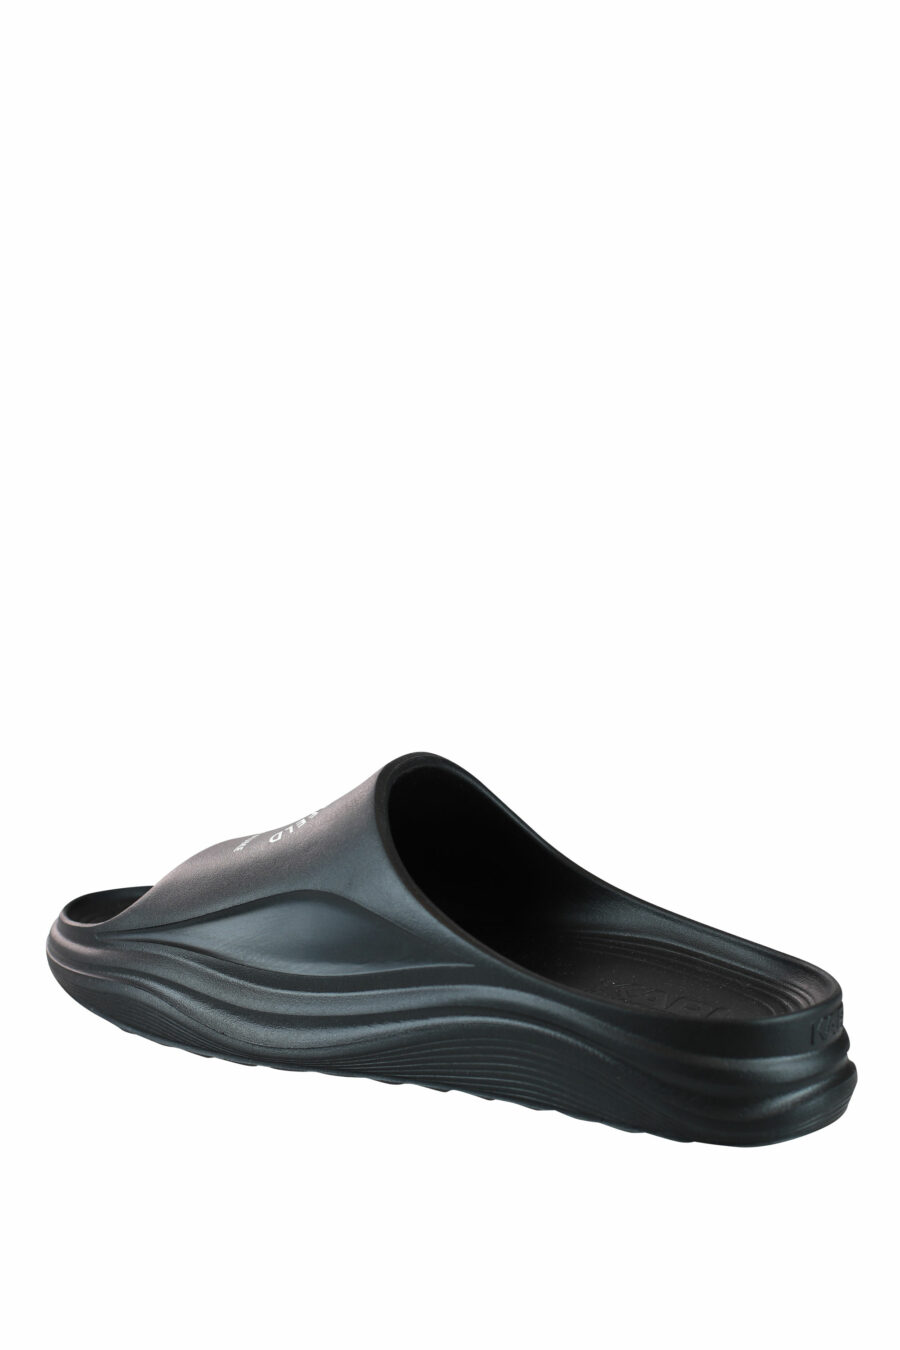 Schwarze Öko-Flip-Flops mit weißem "rue st guillaume"-Logo - IMG 0052